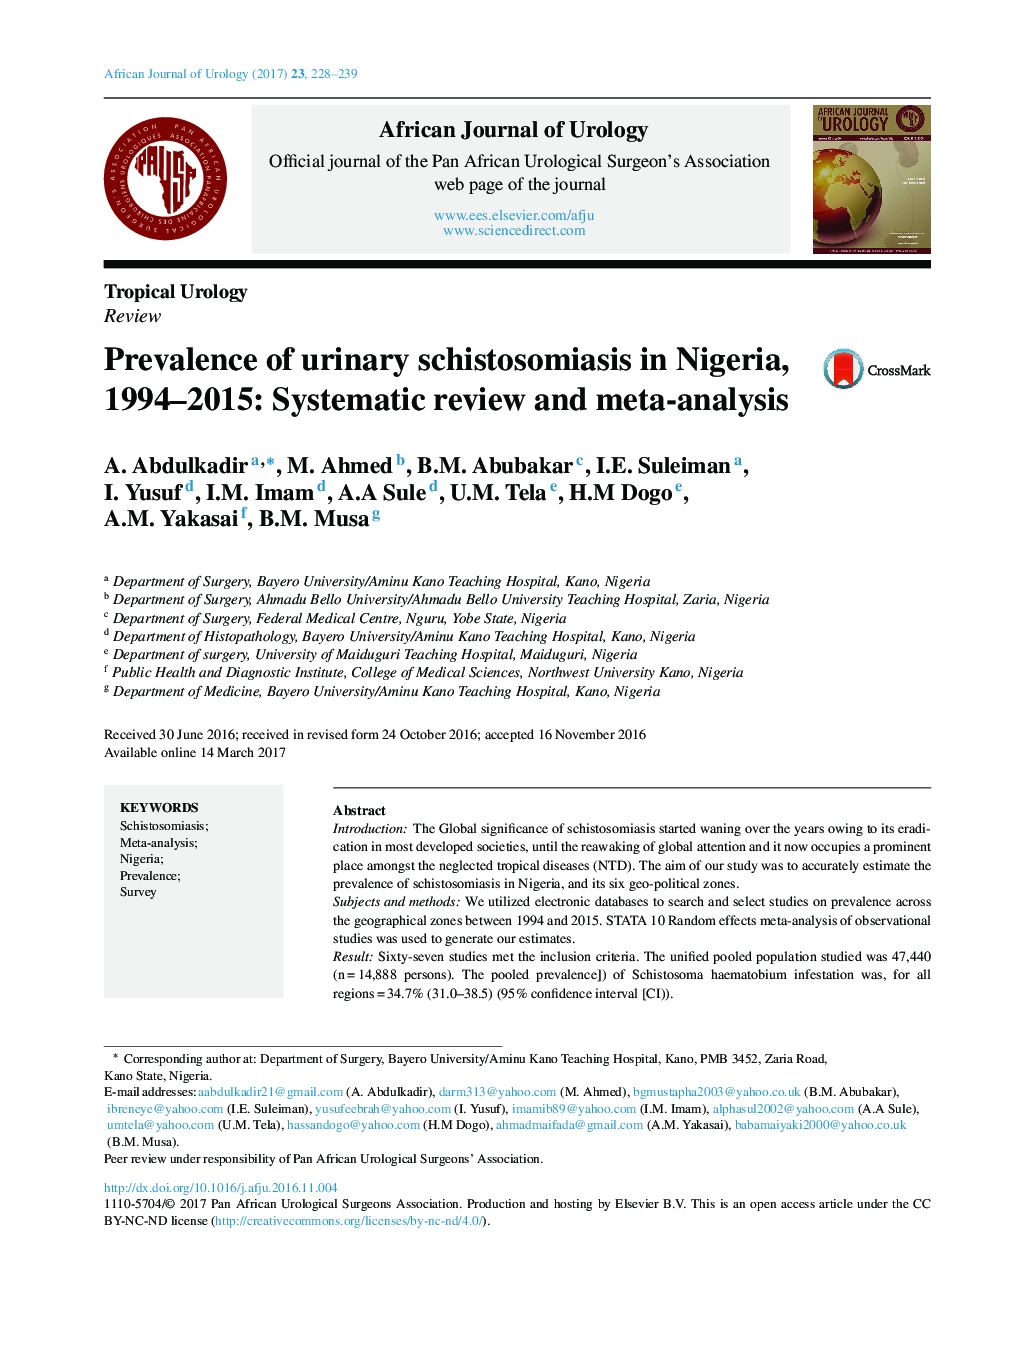 بررسی اورولوژیست های گرمسیری شیوع شیستوزومیایای ادرار در نیجریه، 1994-2015: بررسی سیستماتیک و متا آنالیز 